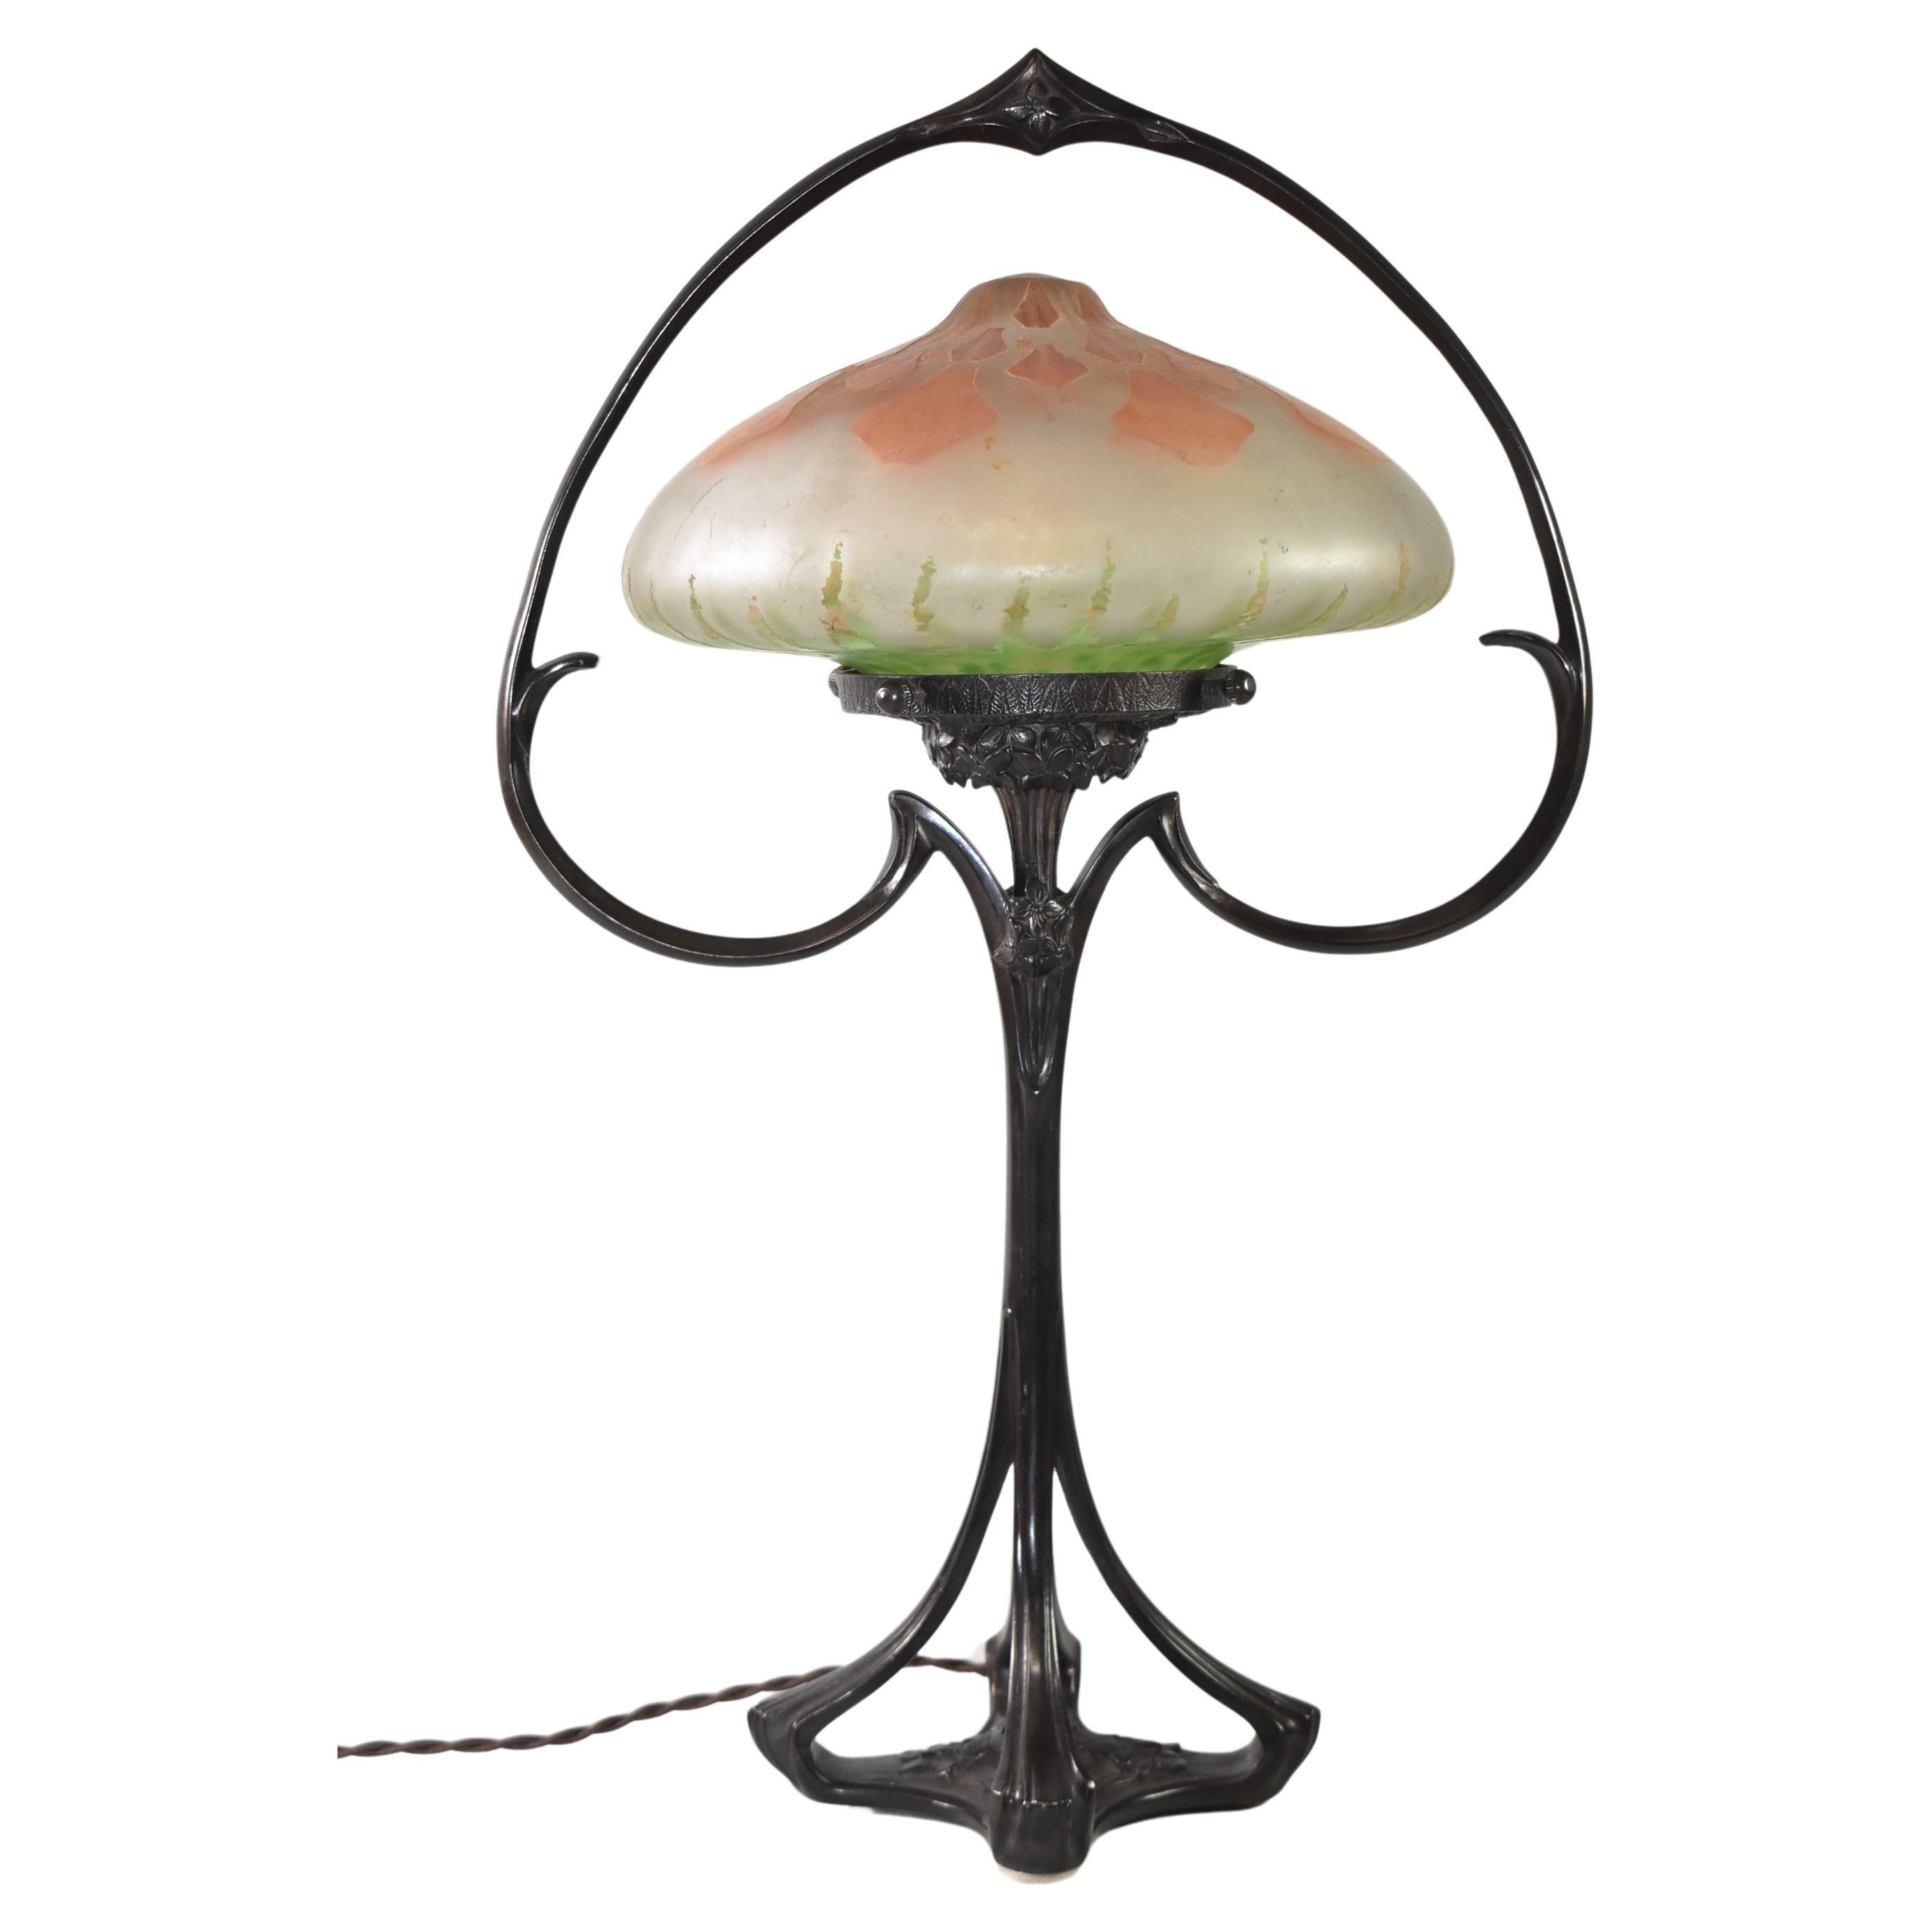 Lampe de table Art Nouveau avec abat-jour Daum Nancy, vers 1900 France